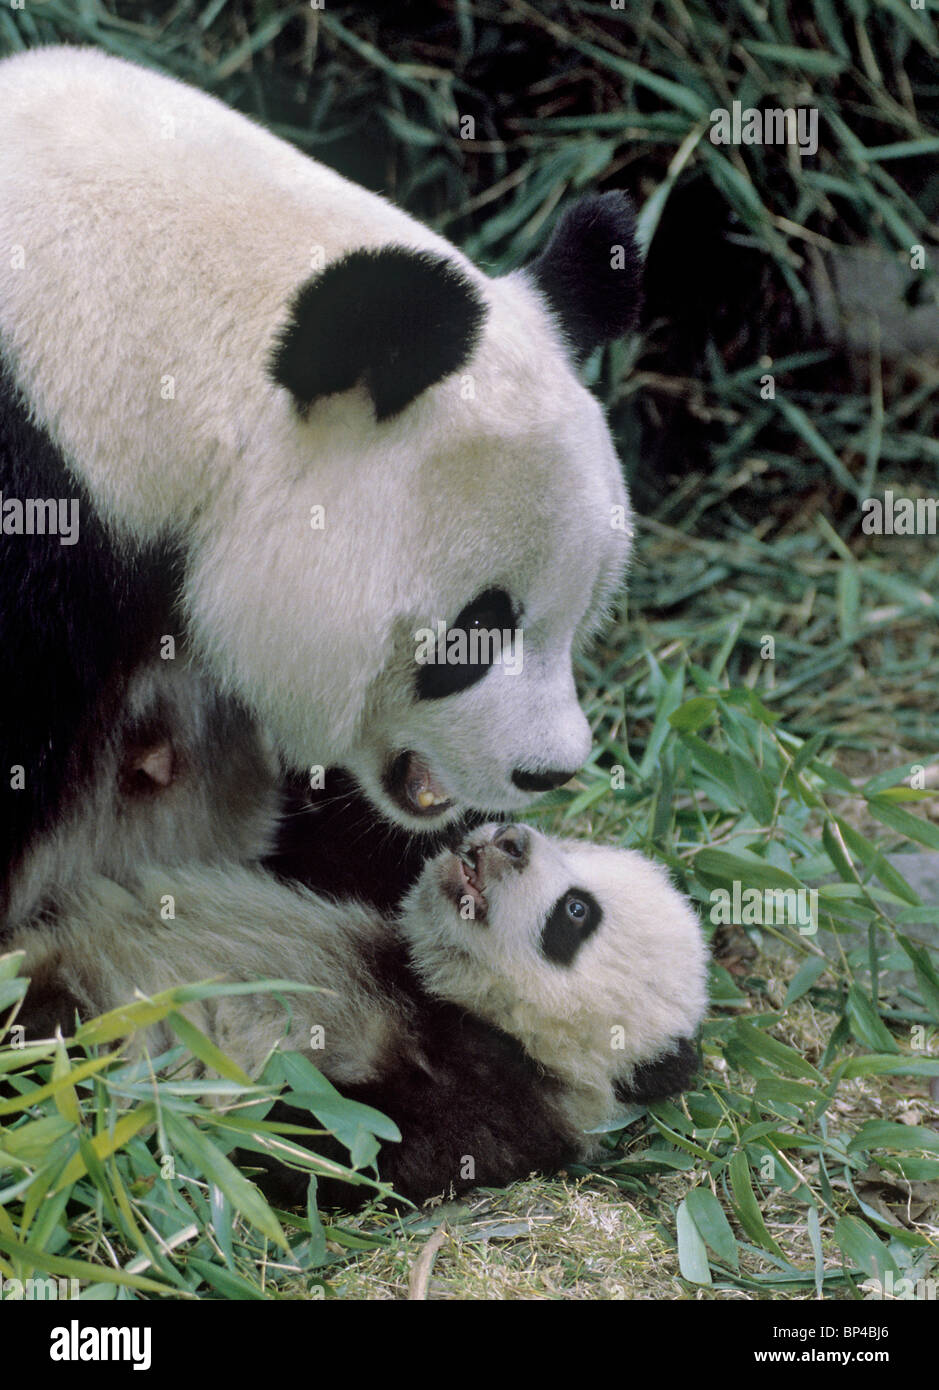 Panda gigante madre con 5 meses de edad Wolong en China. Foto de stock